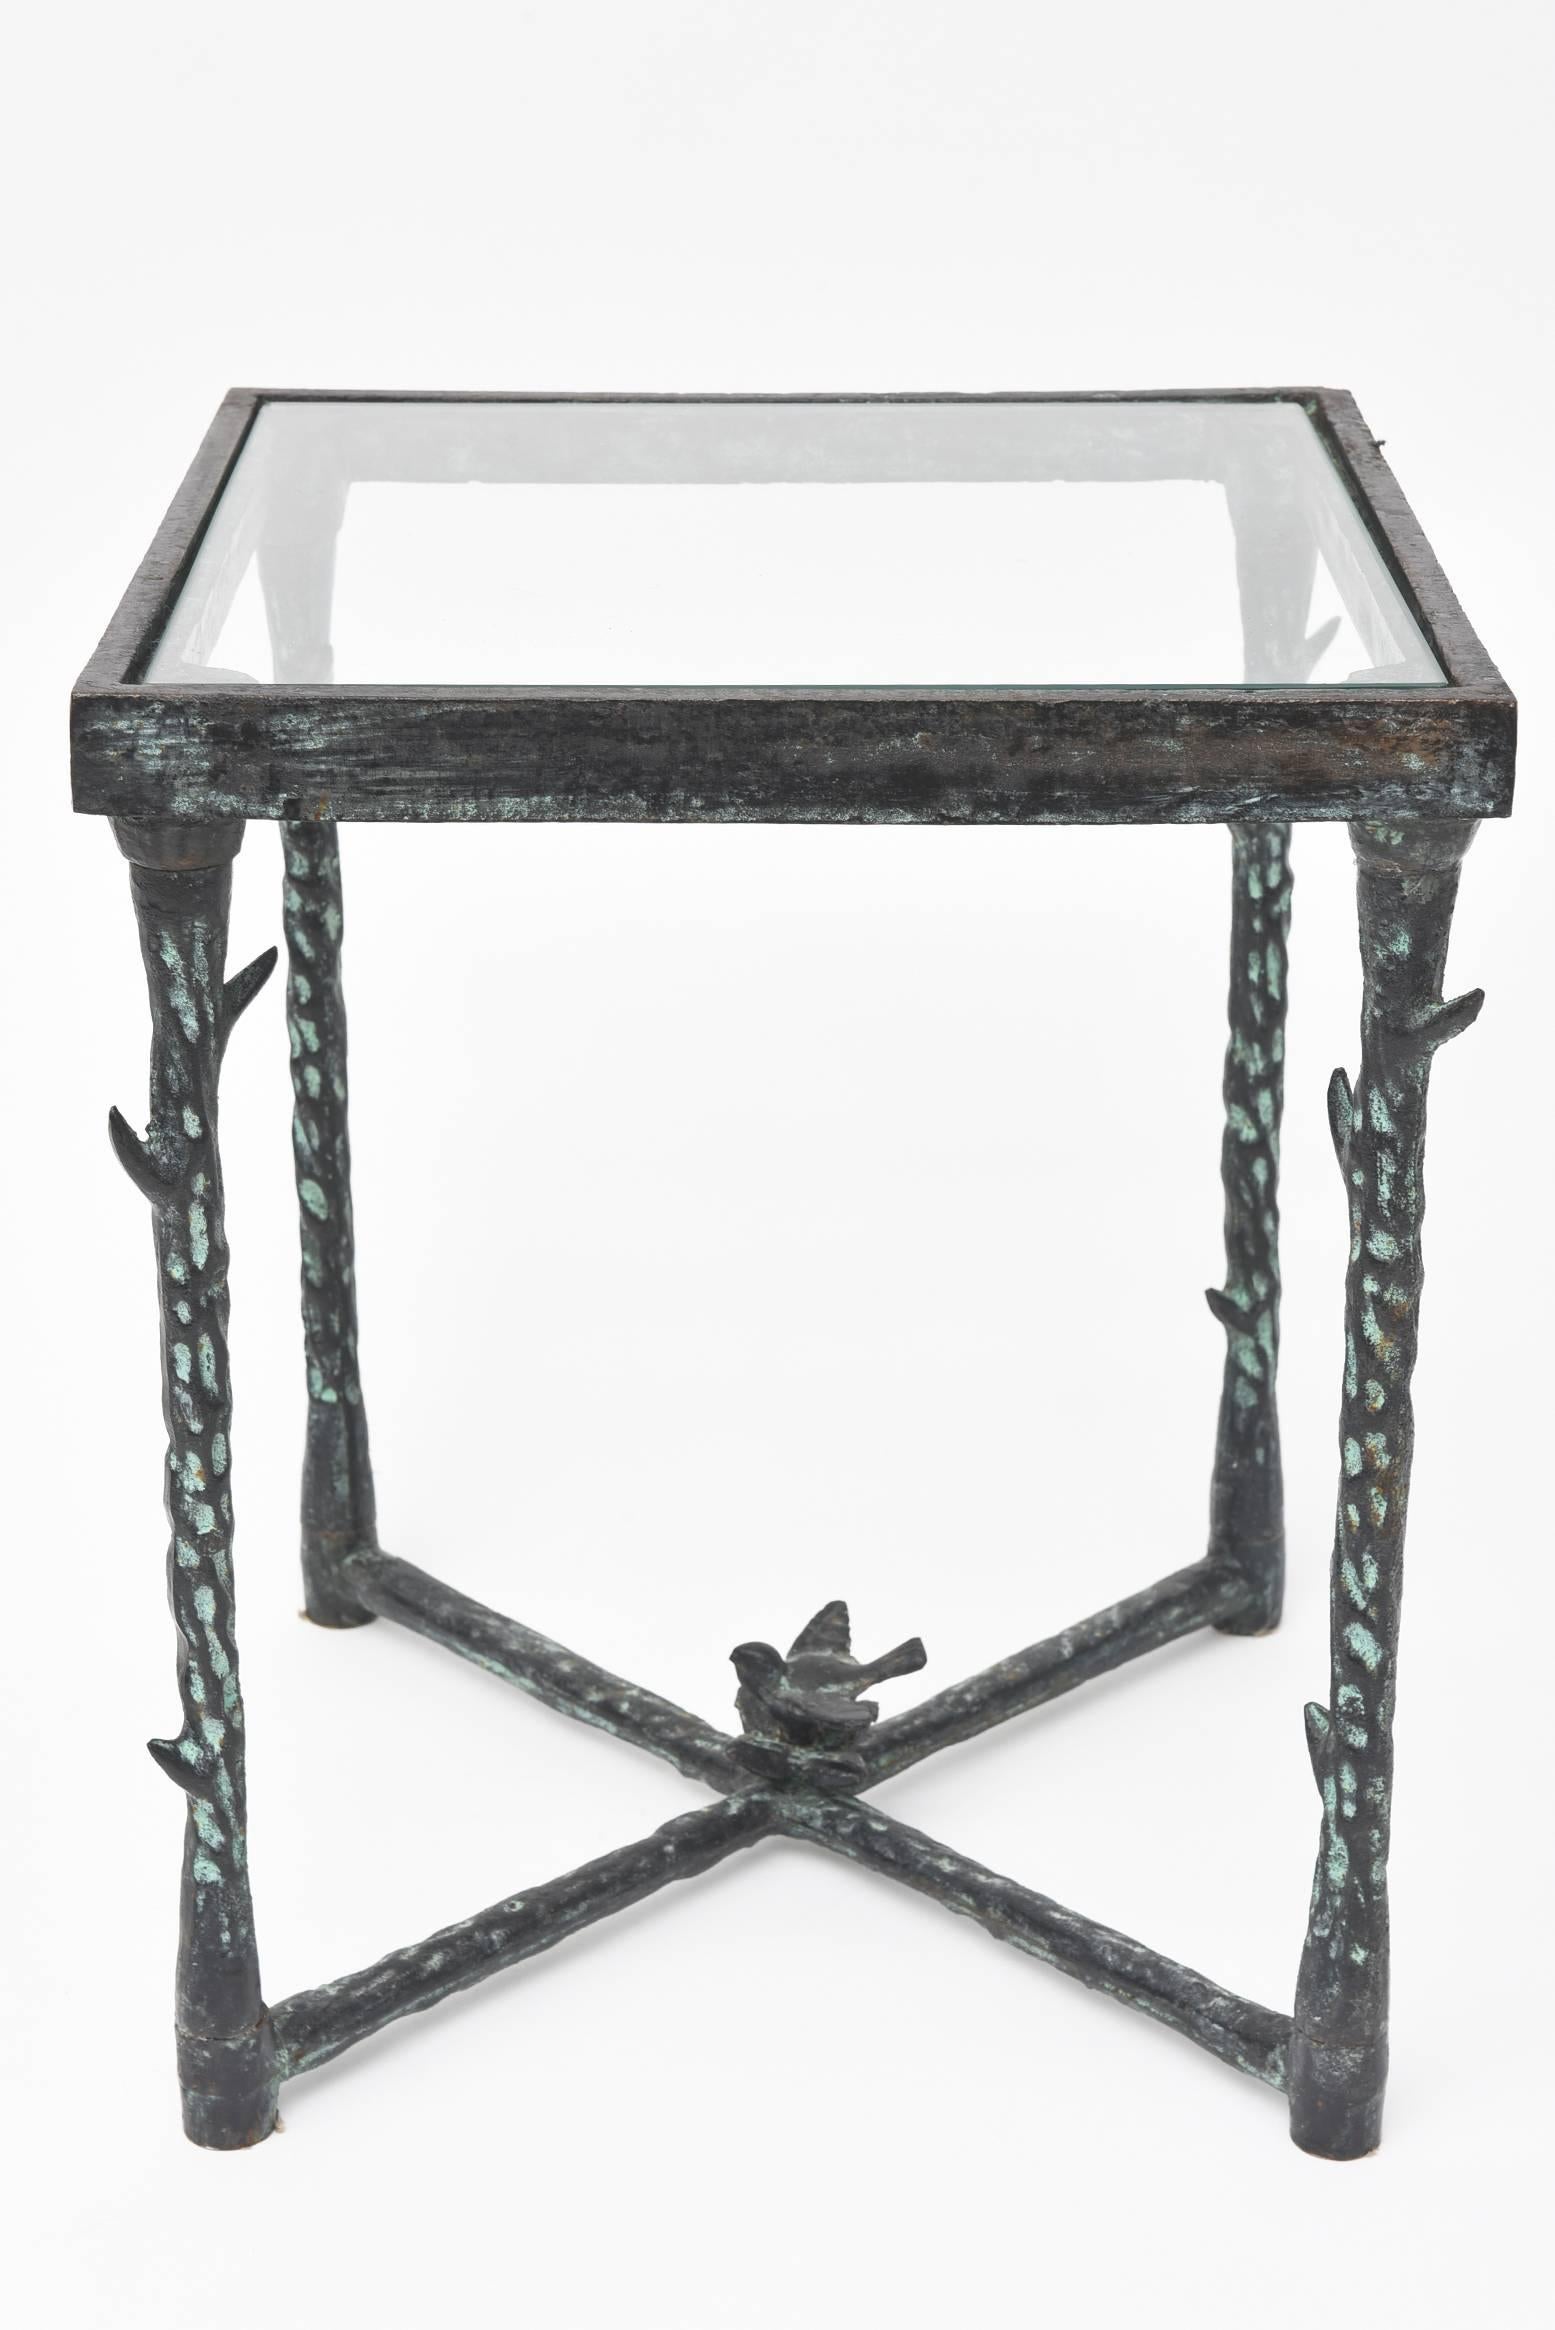 A fine petite table.
Deep bronze patina over steel.